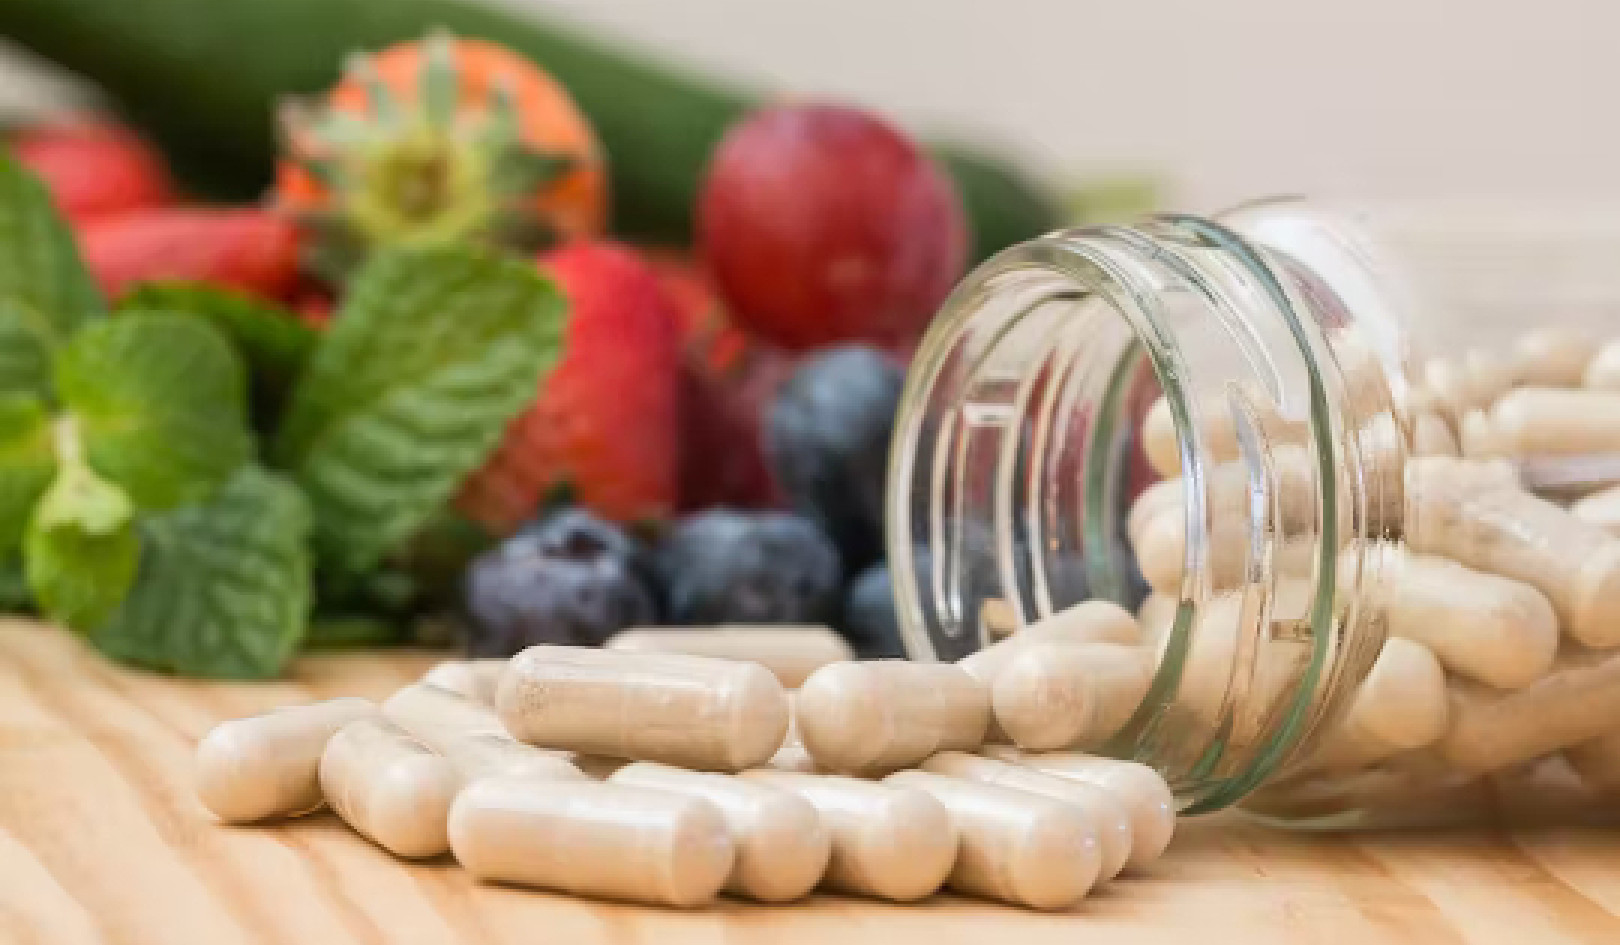 Uminom ng Vitamins at Supplements? Ang Kailangan Mong Malaman Ngayon